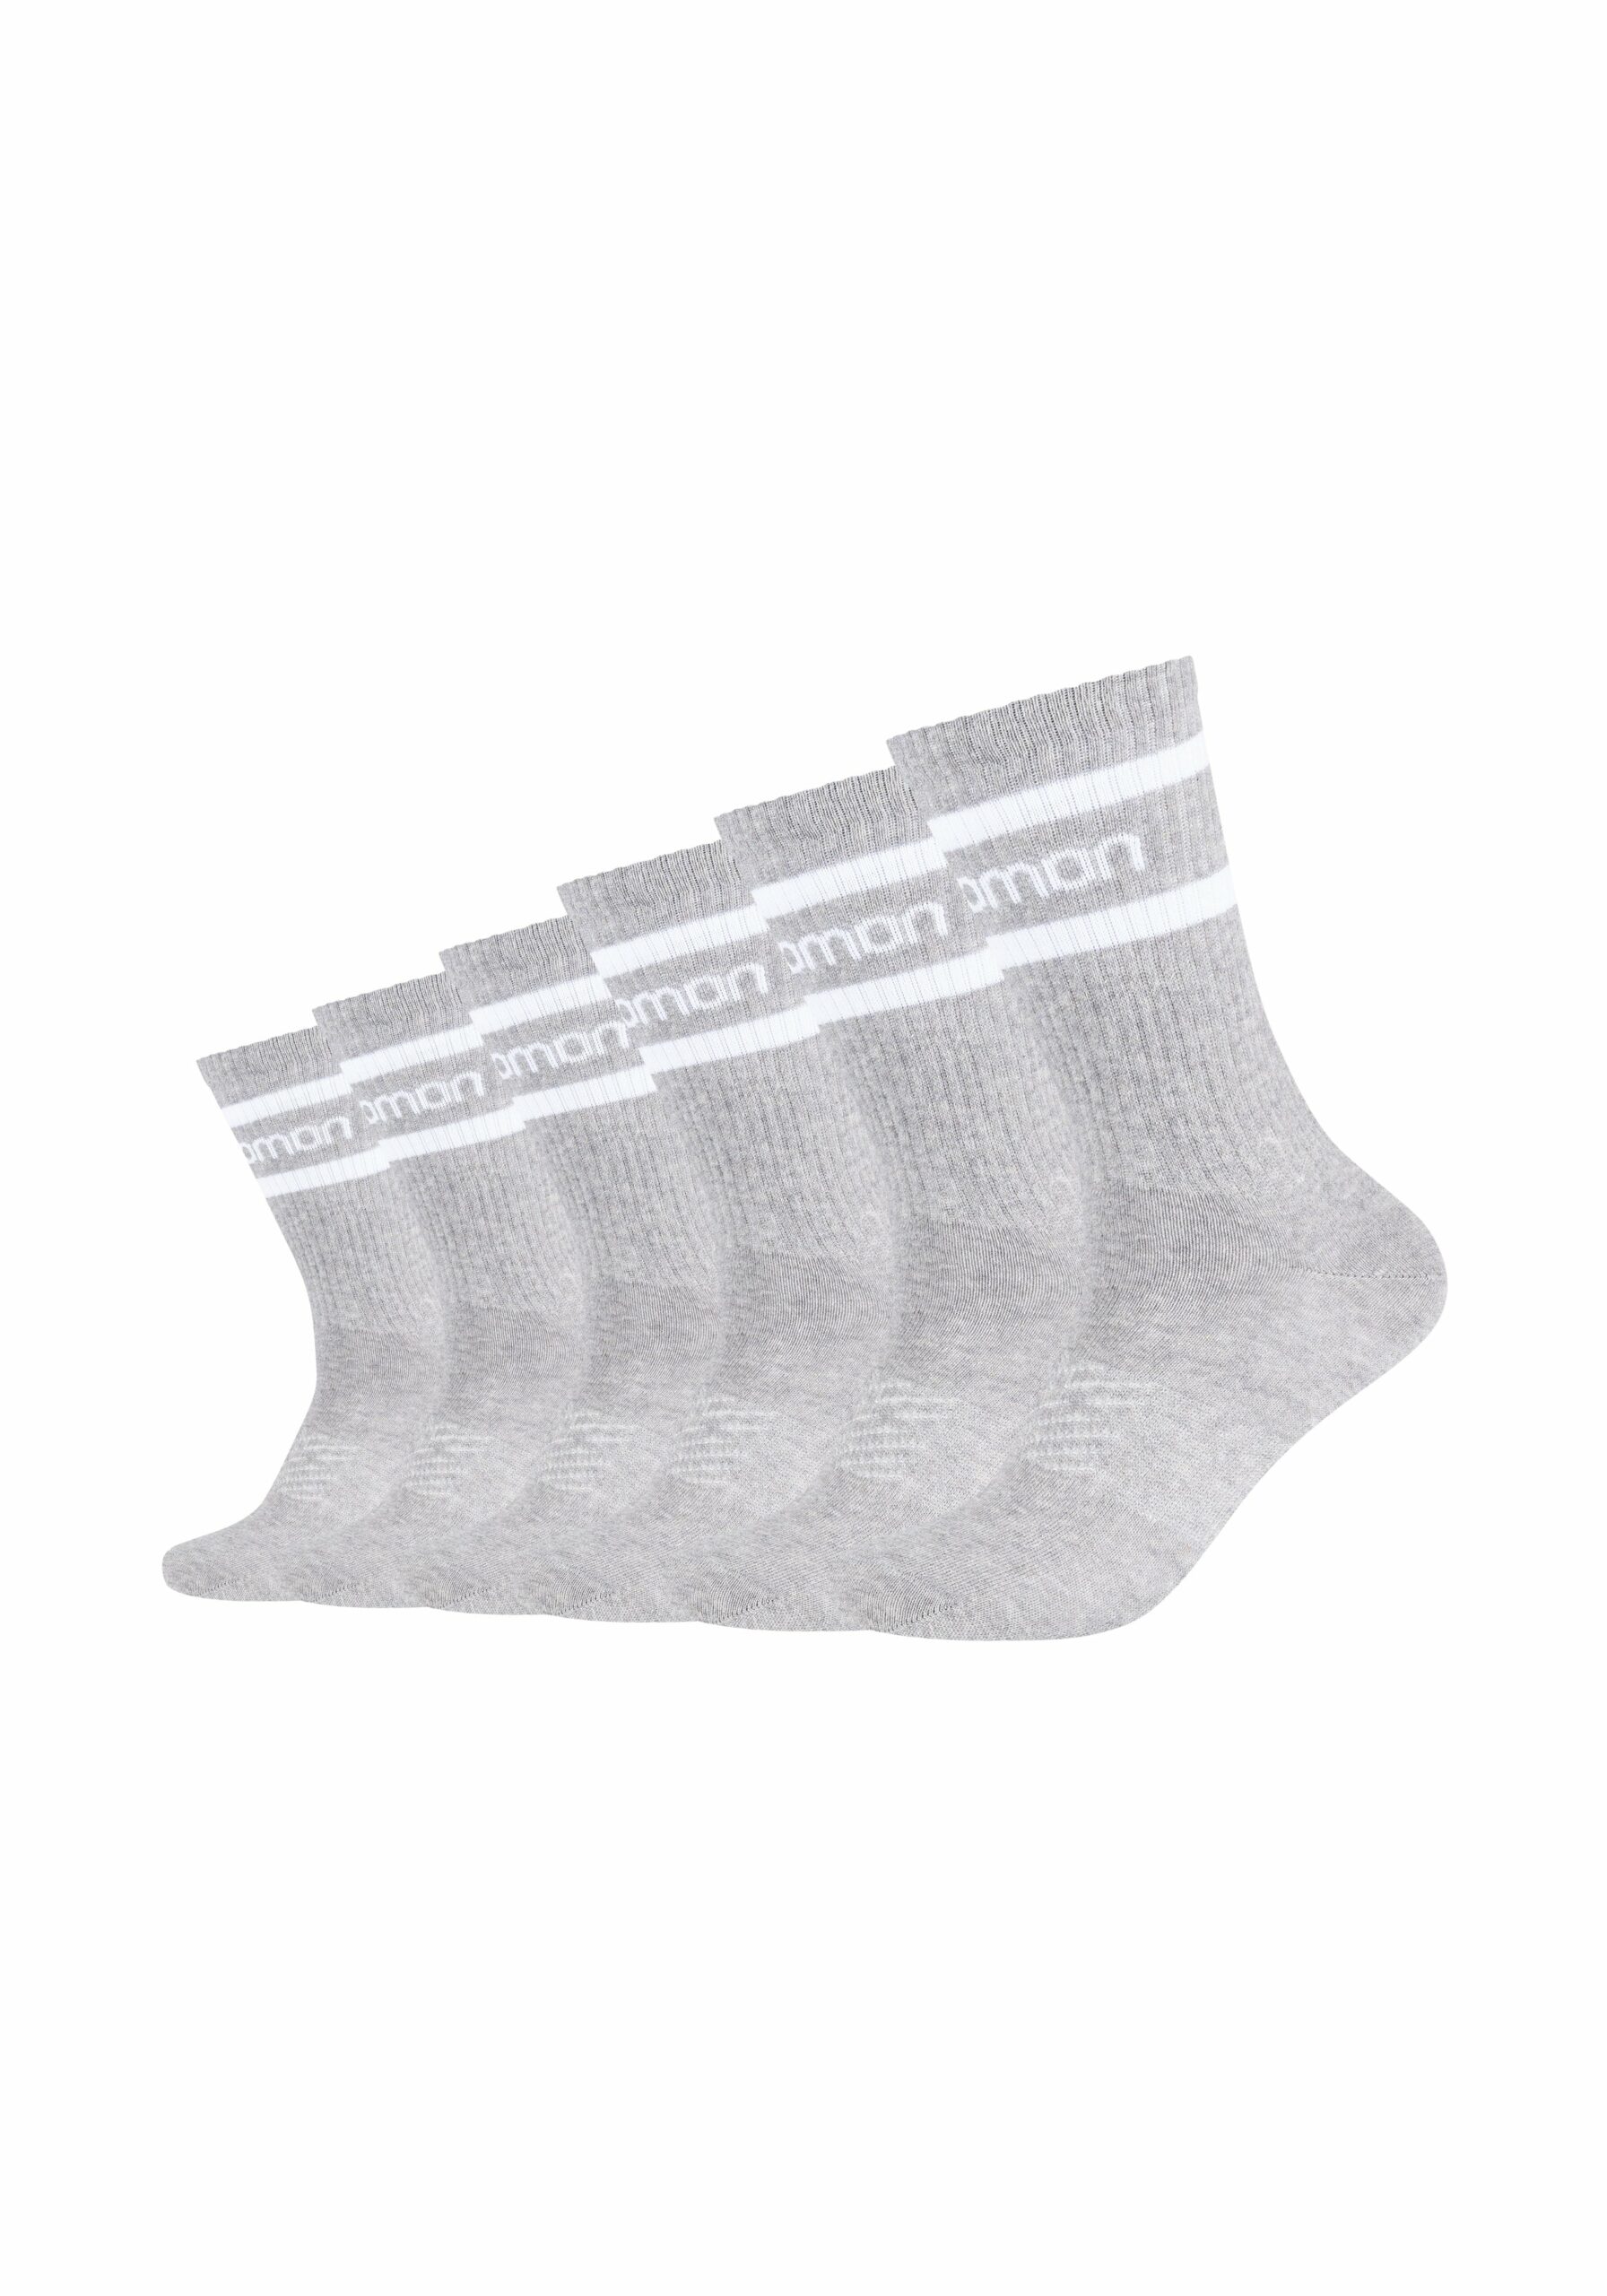 Salomon Socken mesh Ventilation Life 6er Pack Grey White